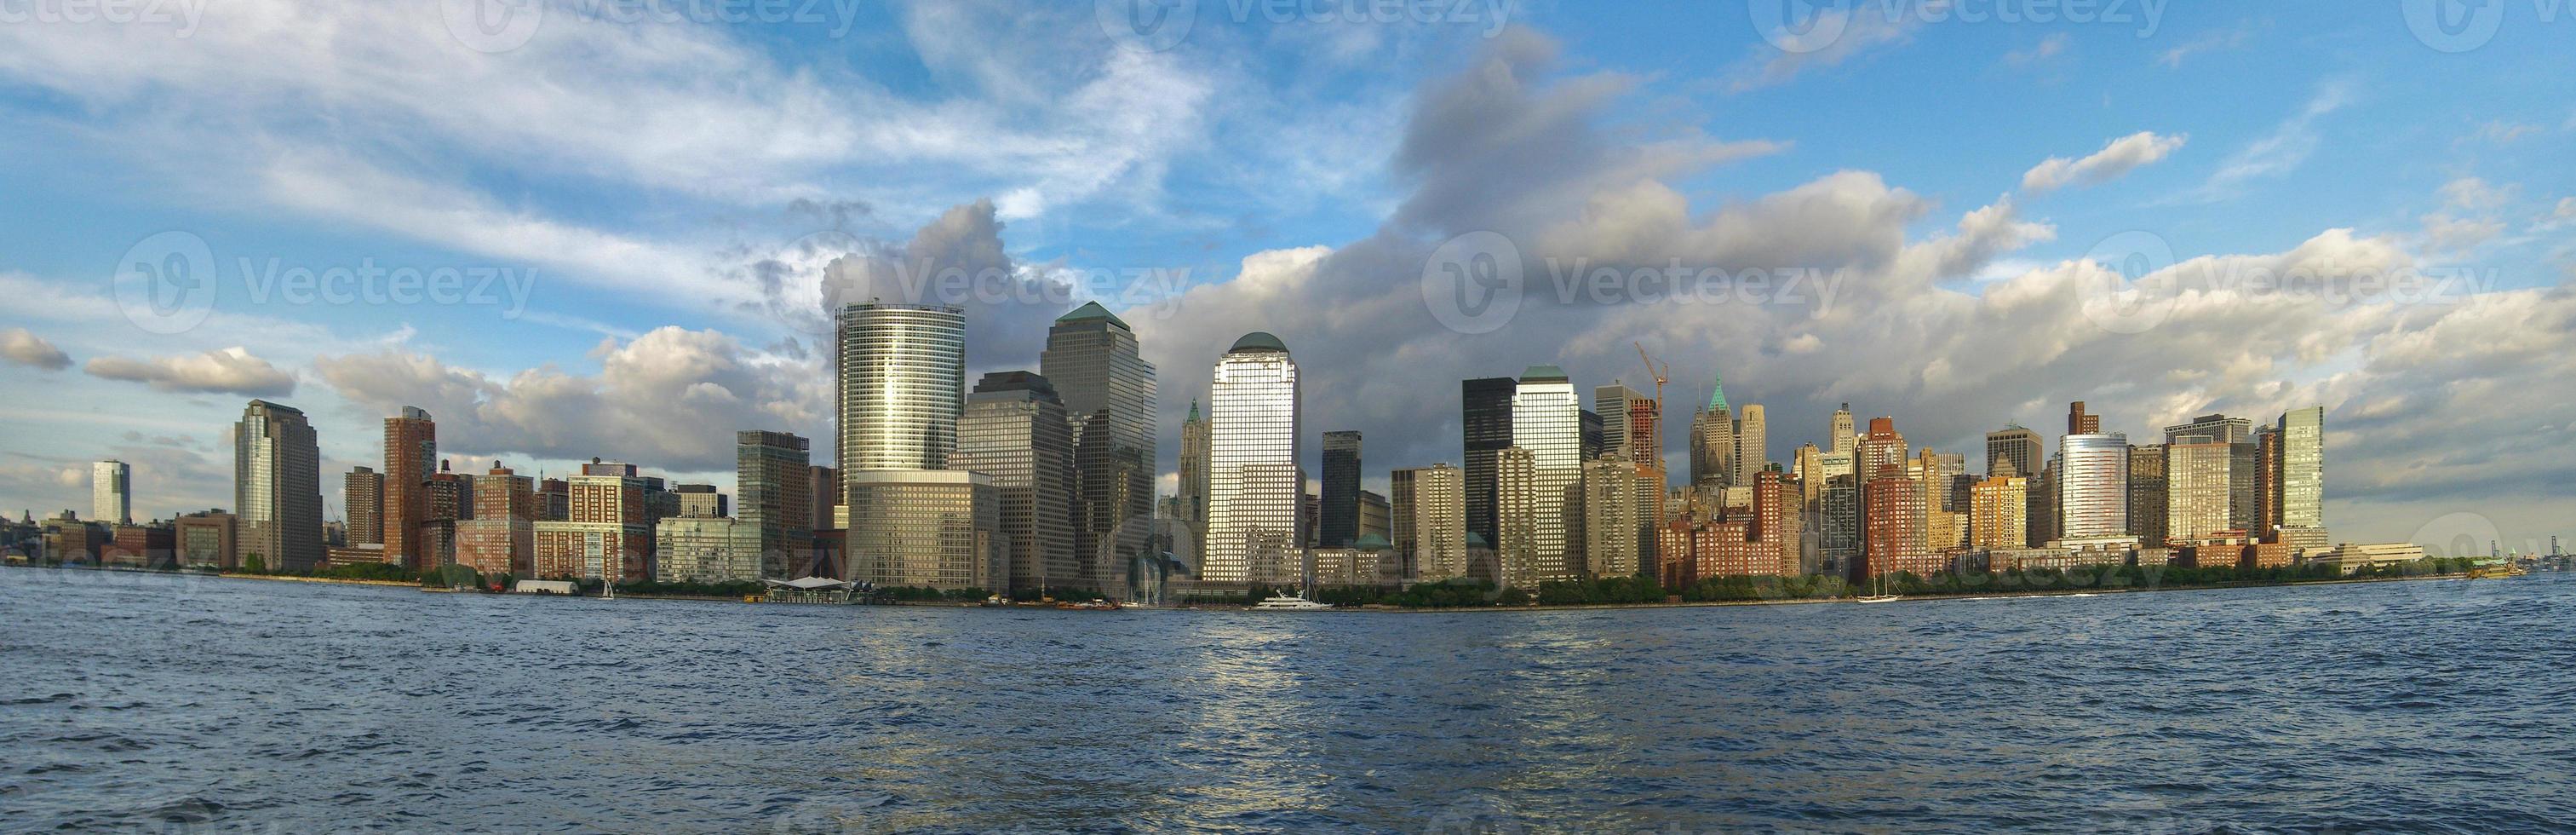 Die Skyline der Innenstadt von New York vom Hudson River aus gesehen foto